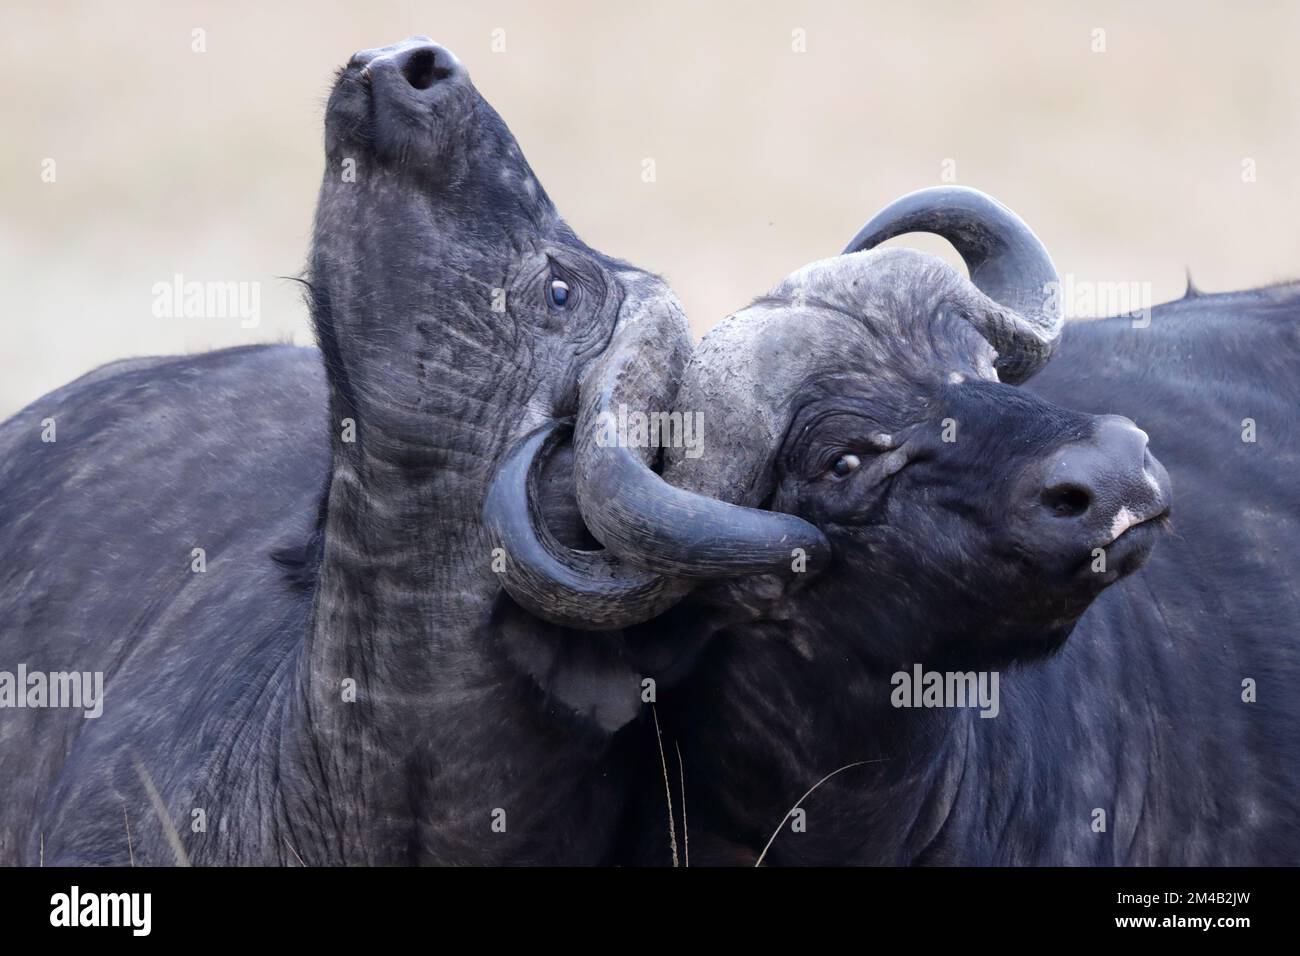 Zwei afrikanische Büffel messen ihre Stärke, Hörner sind verschlossen und schwer zu trennen, intensiver Kampf, Masai Mara, Olare Motorogi Conservancy, Kenia Stockfoto